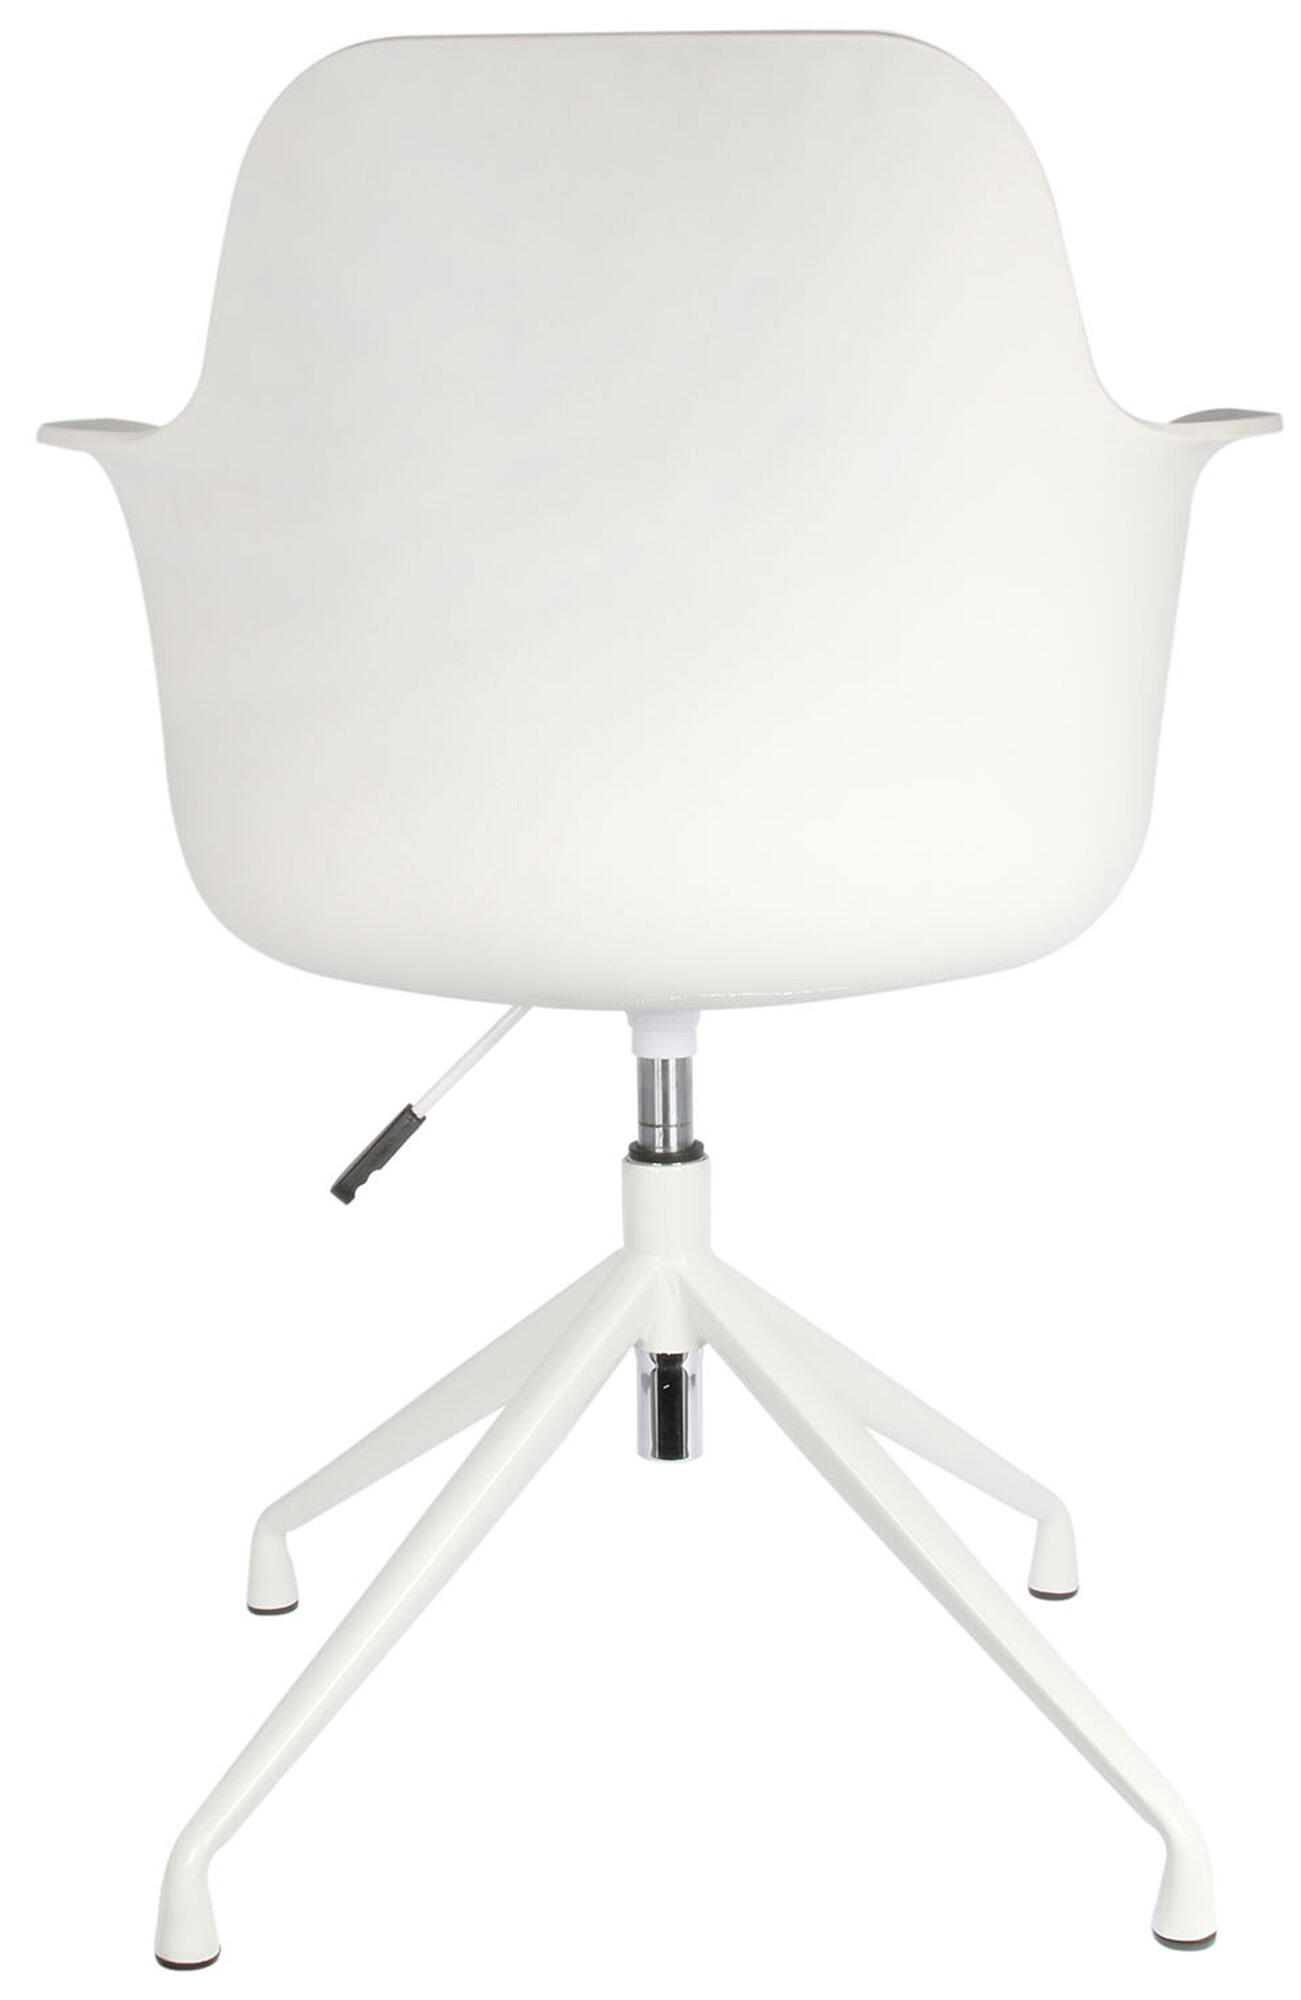 Set de 2 sillas de comedor chicago de plástico color blanco de 78x57,5x60cm